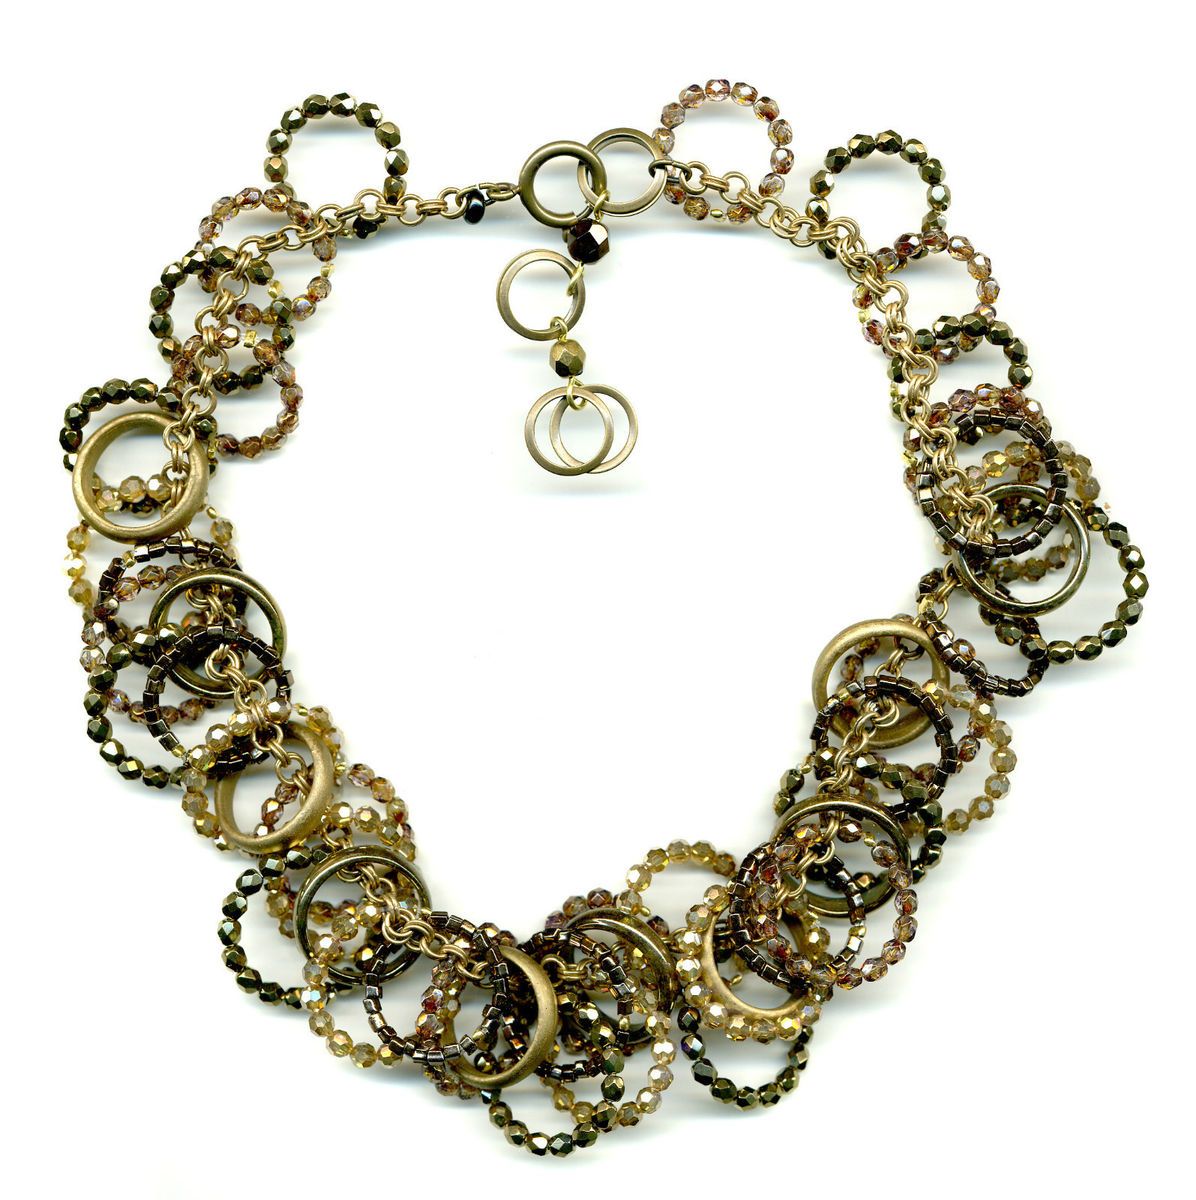 Halskette 10159 Glas Perlen Ringe gold   UVP € 439,90   NEU